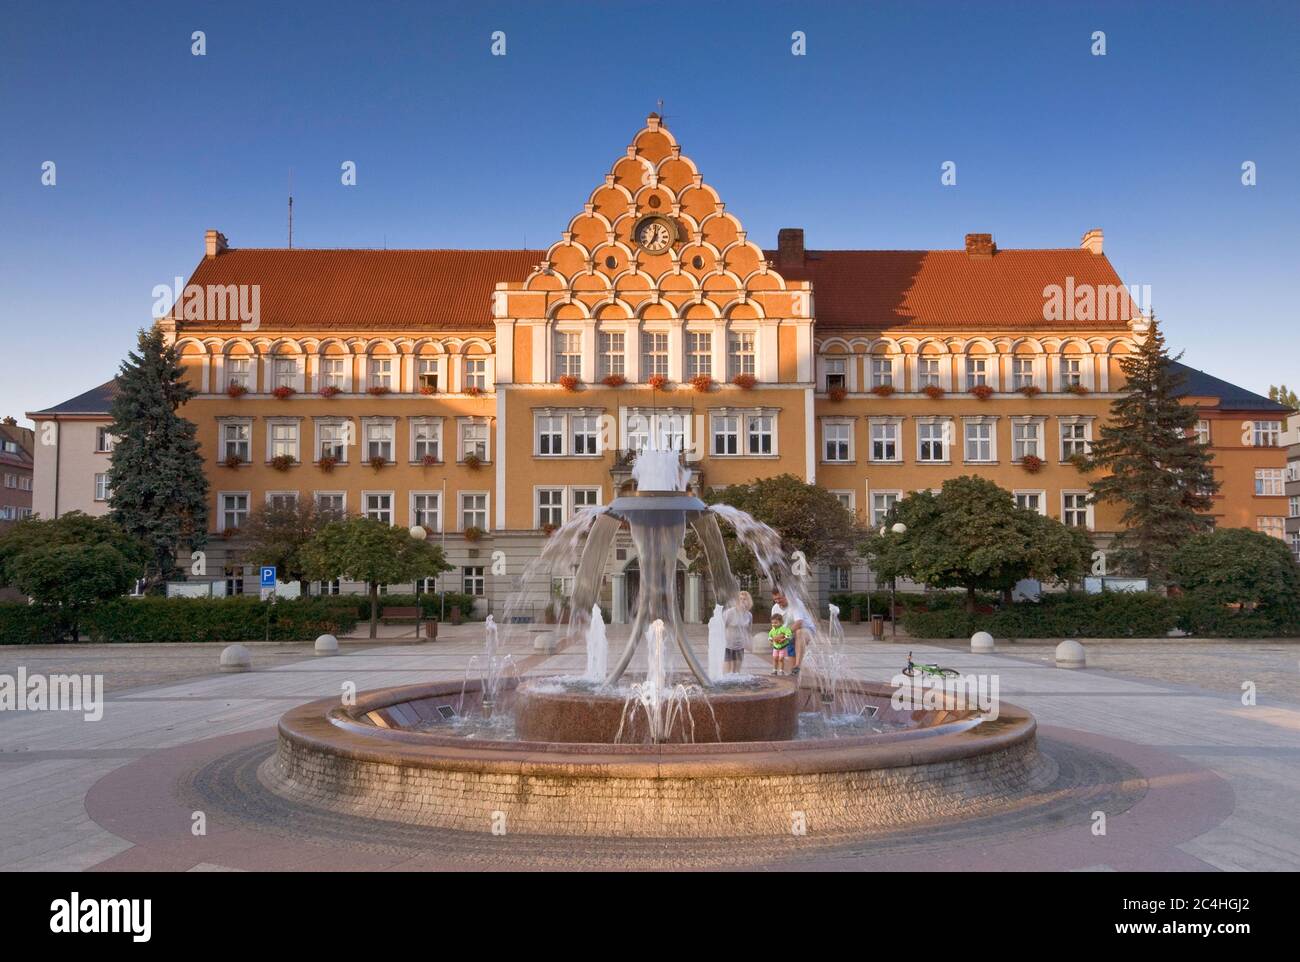 Fountain and Town Hall at sunset in Český Těšín, Moravskoslezský kraj, Czech Republic Stock Photo